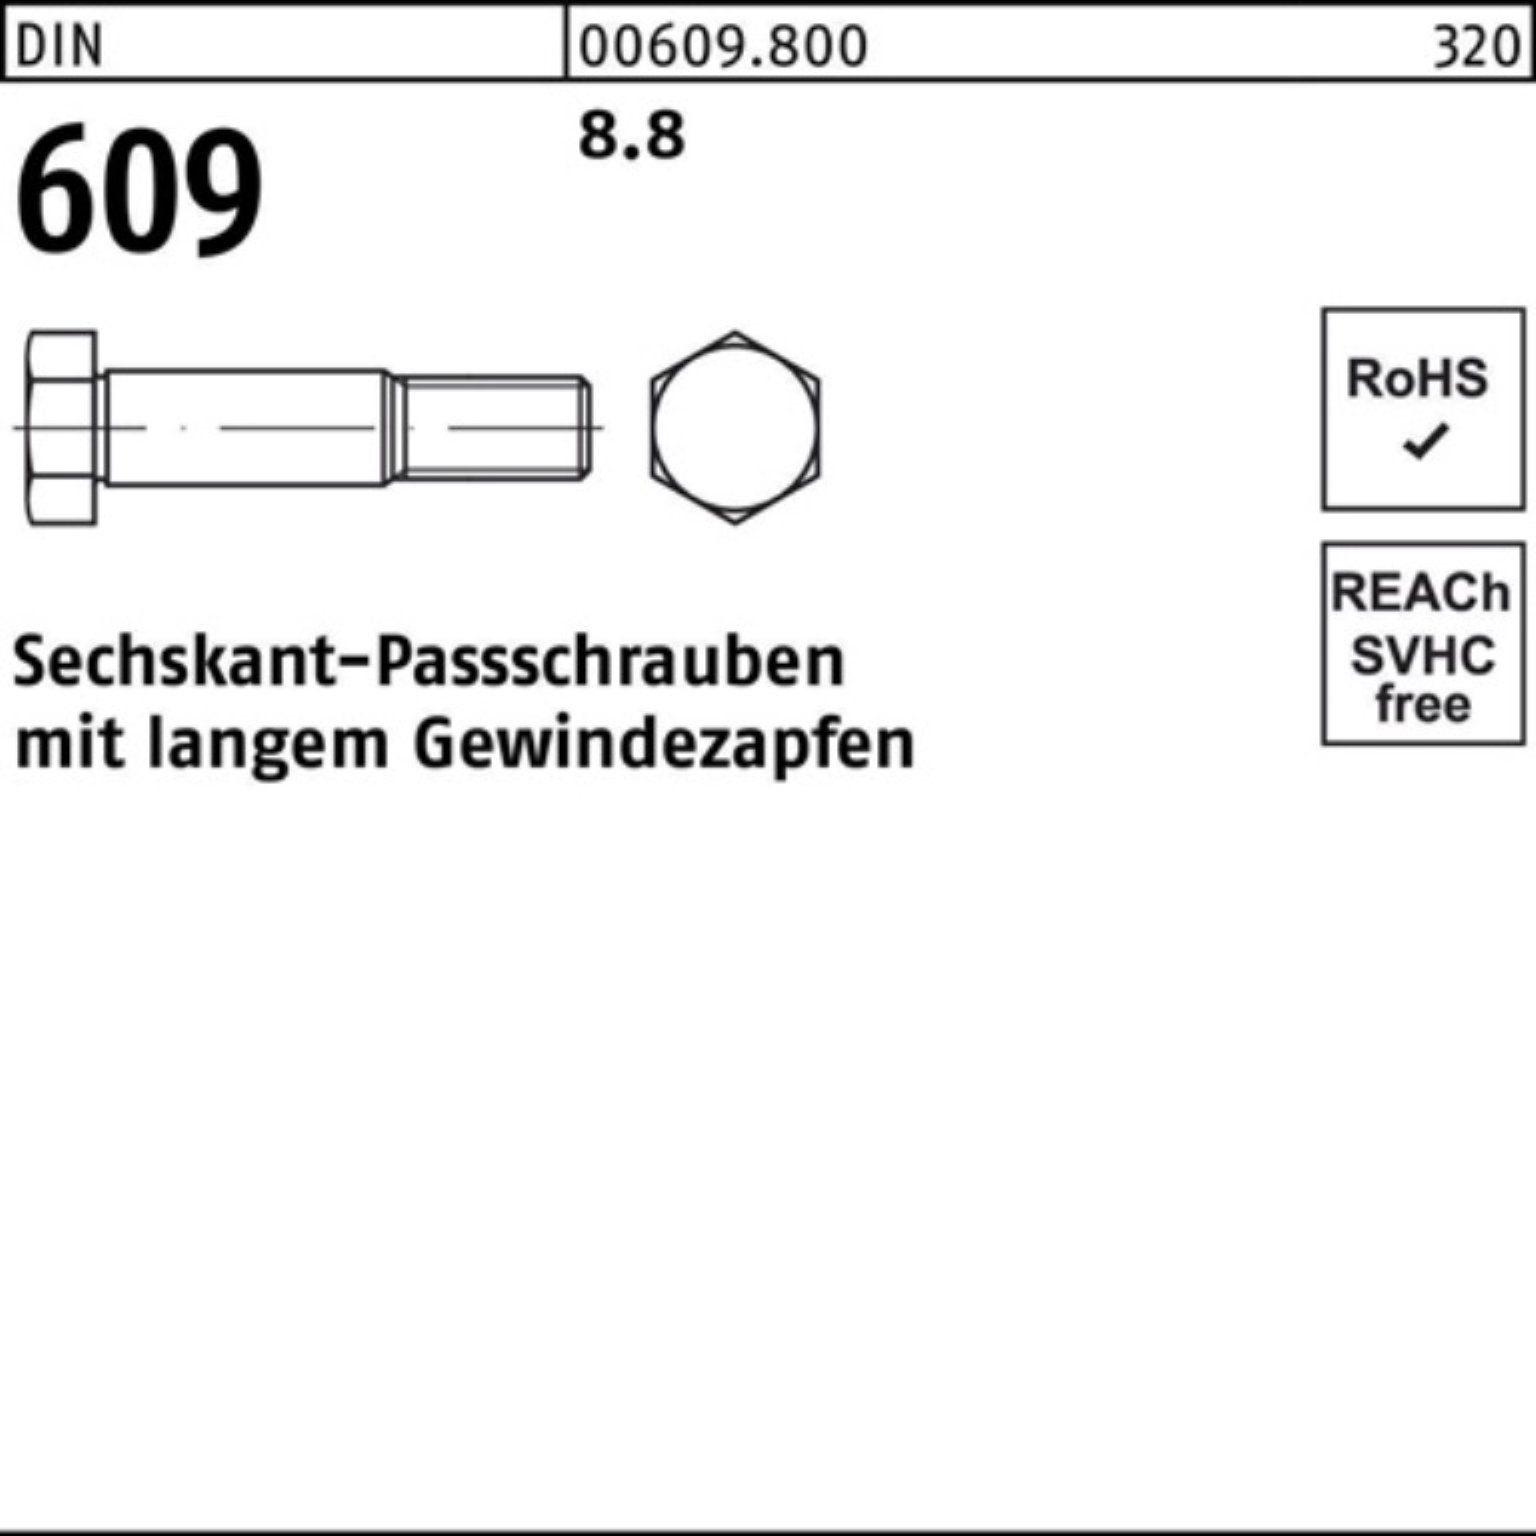 DIN 55 M16x 609 Pack Sechskantpassschraube langem Schraube Reyher Gewindezapfen 100er